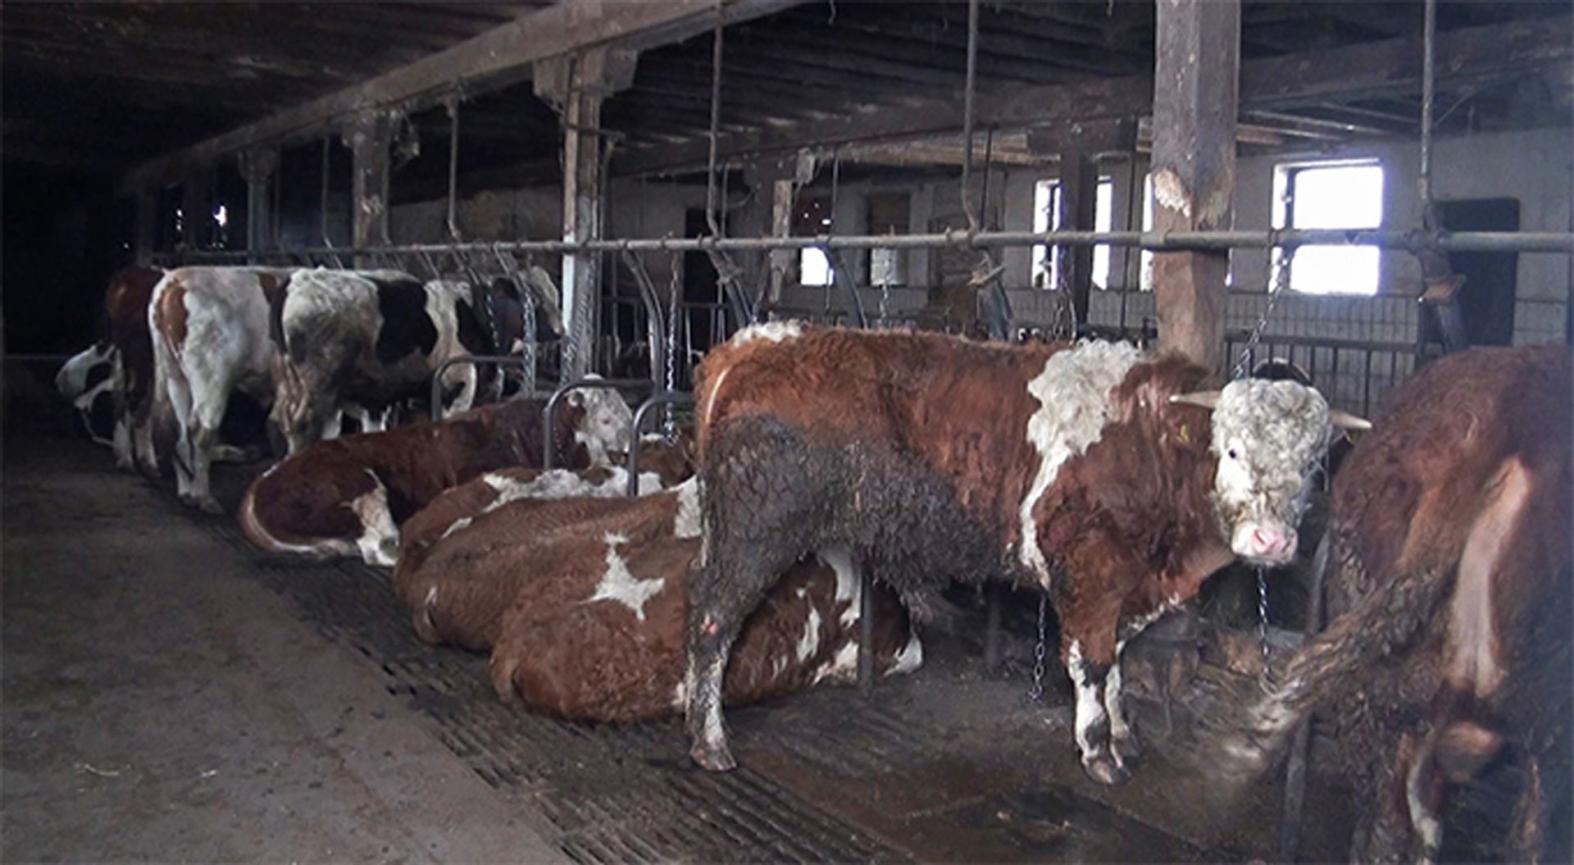 Diese jungen Rinder werden für die Fleischproduktion gemästet. Sie sind an kurzen Ketten angebunden und müssen auf hartem und kotverdrecktem Spaltenböden liegen.